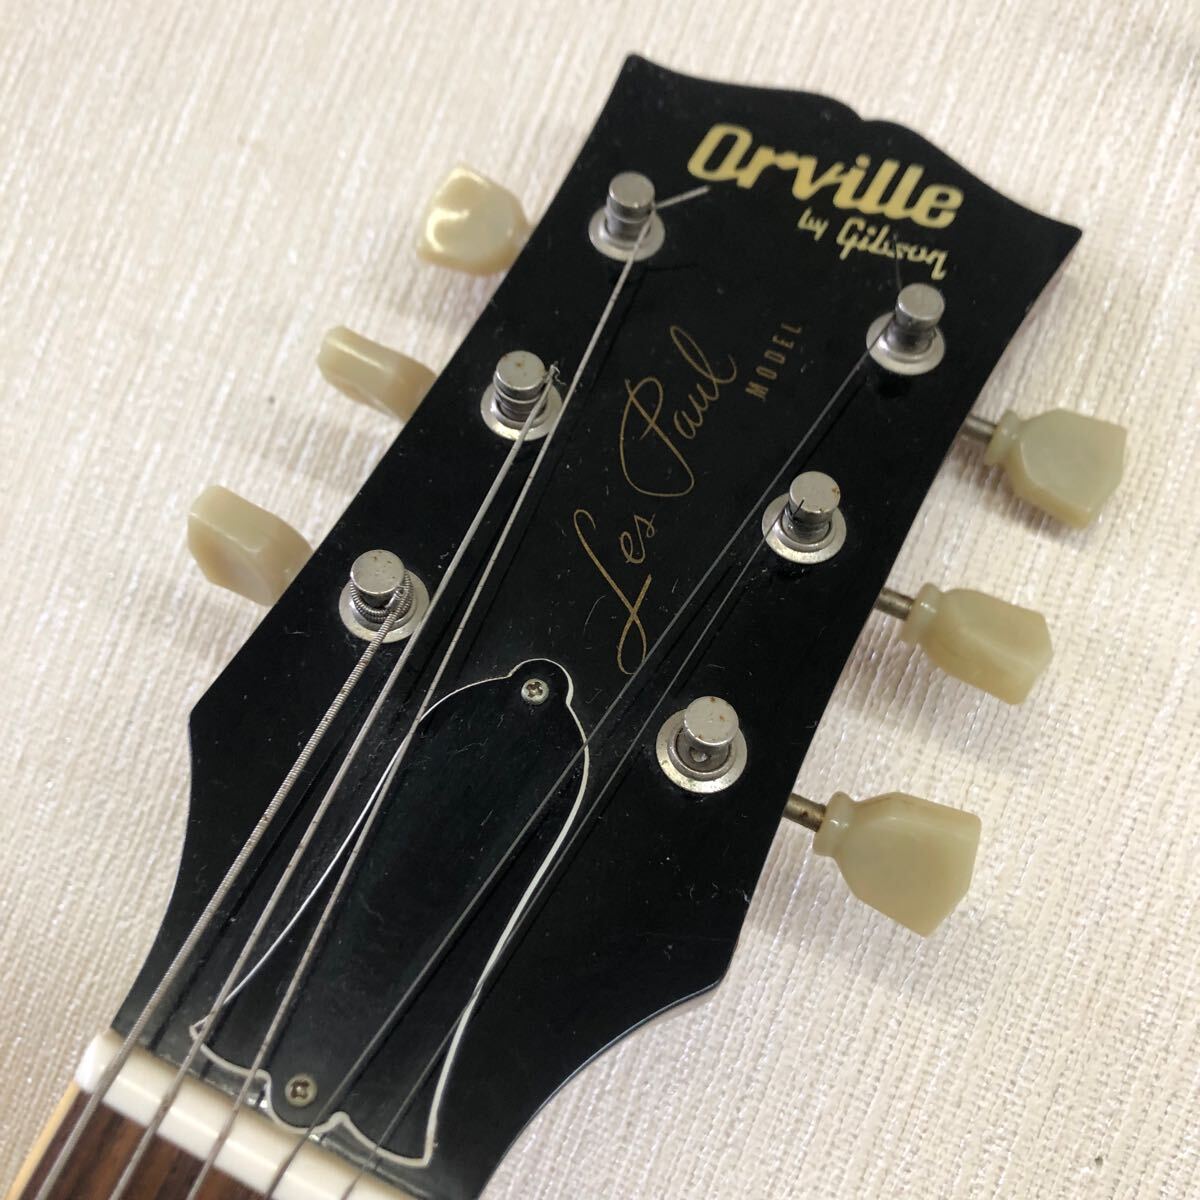 【ジャンク品】Orville by Gibson レスポールモデル Les Paul MODEL オーヴィルバイギブソン 未チェック 錆ありの画像6